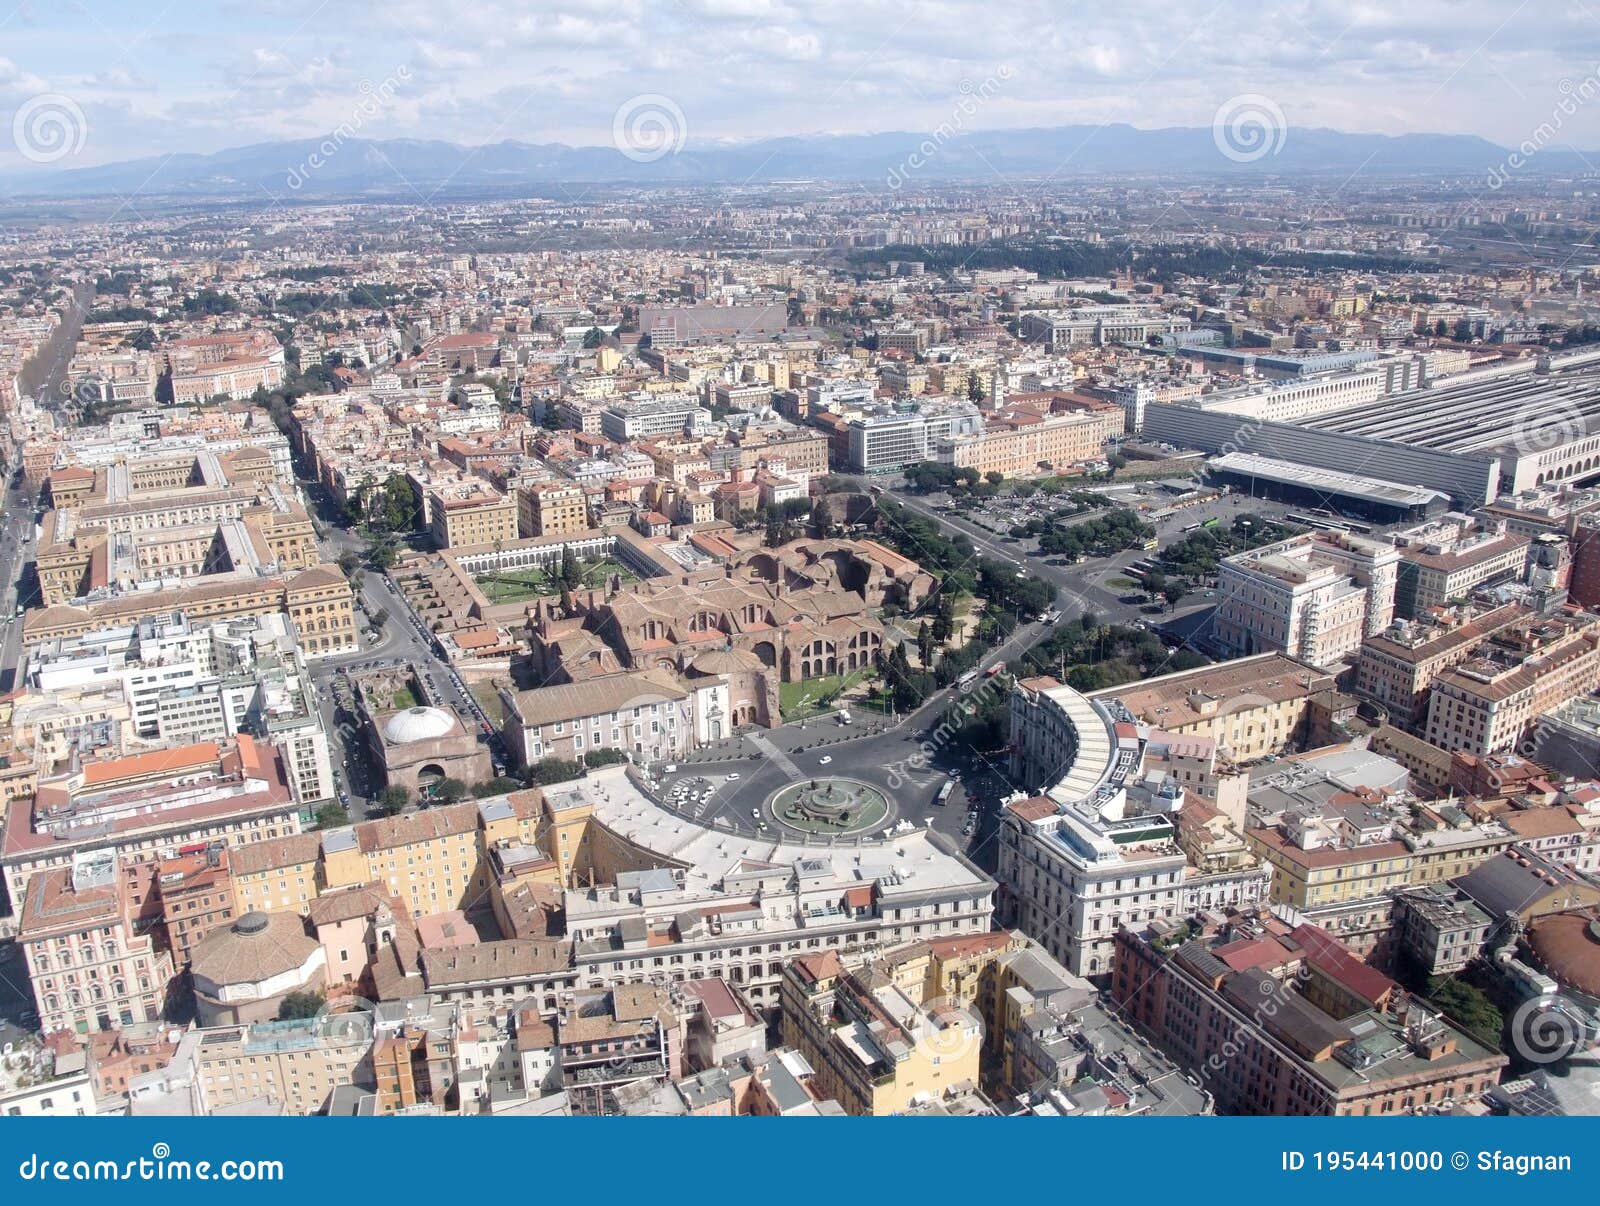 plaza de la republica aerial view, rome italy